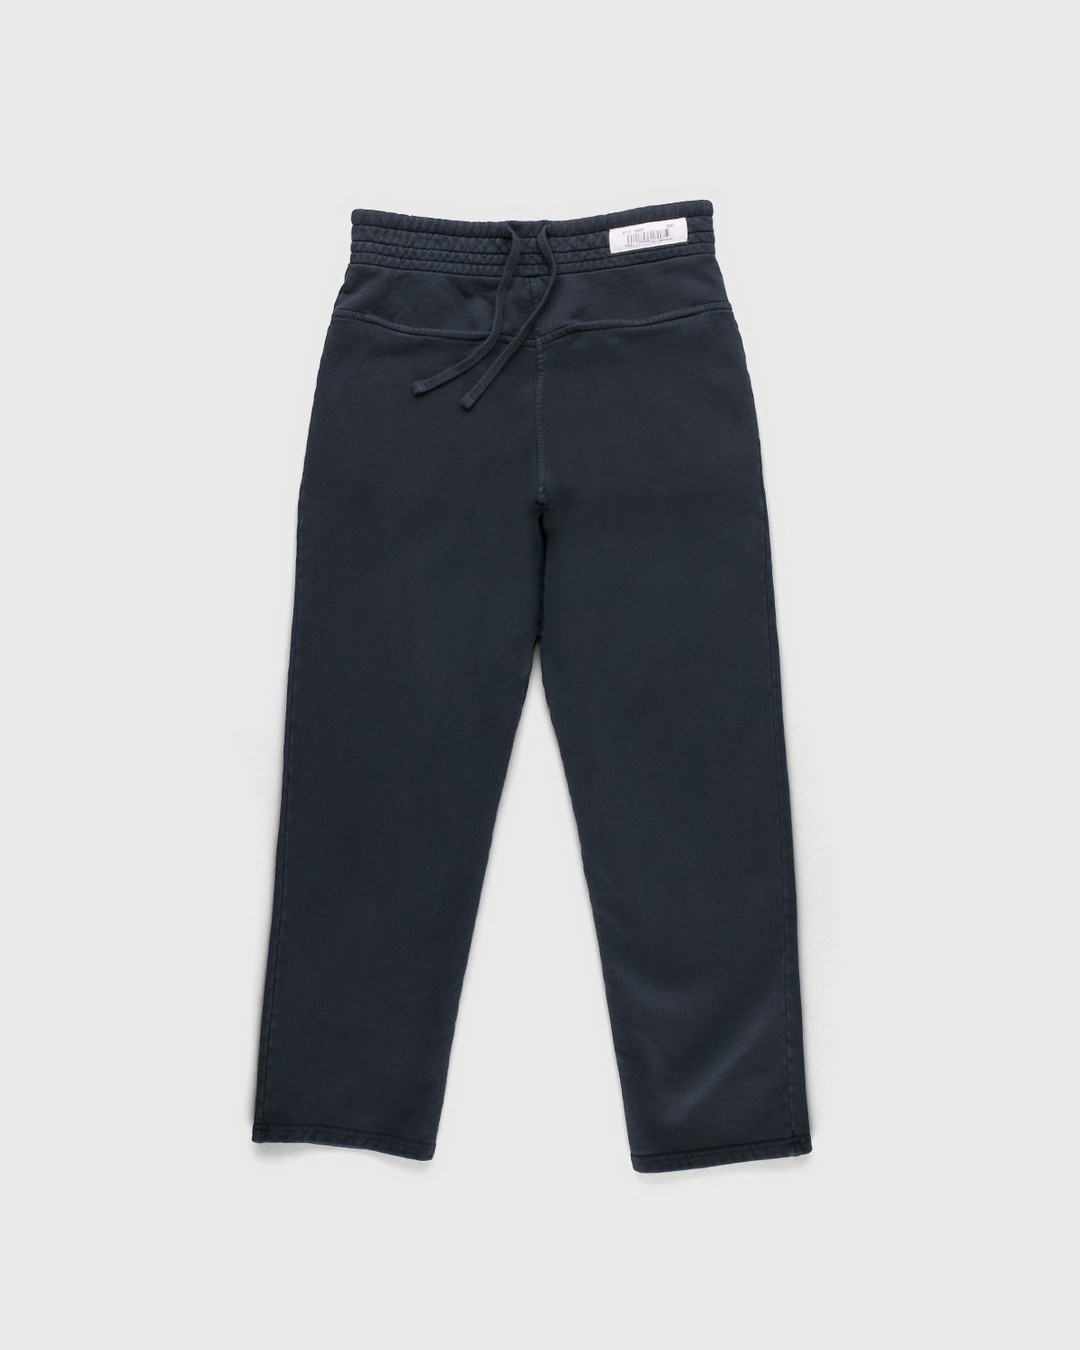 Darryl Brown – Gym Pants Vintage Black - Pants - Black - Image 1